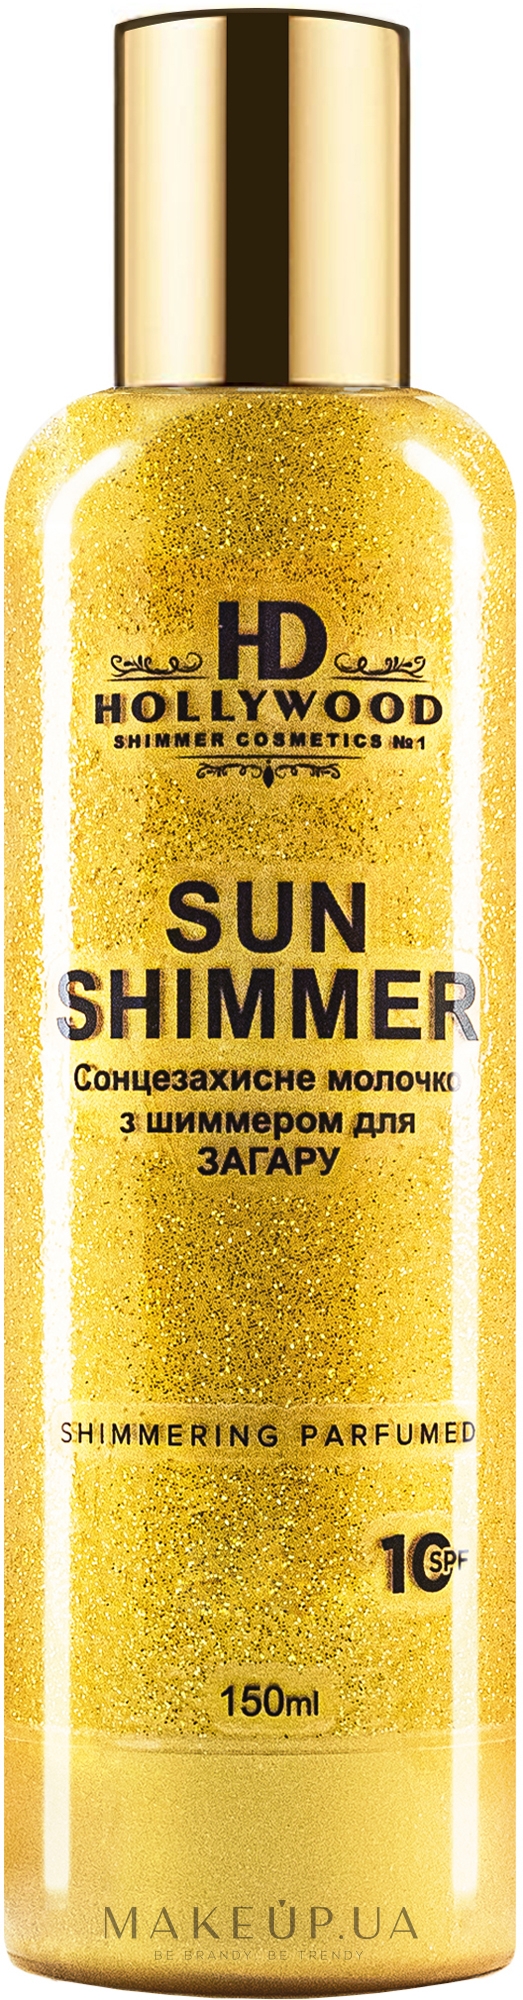 Молочко для засмаги з шимером - HD Hollywood Sun Shimmer Body Milk SPF 10 — фото 150ml